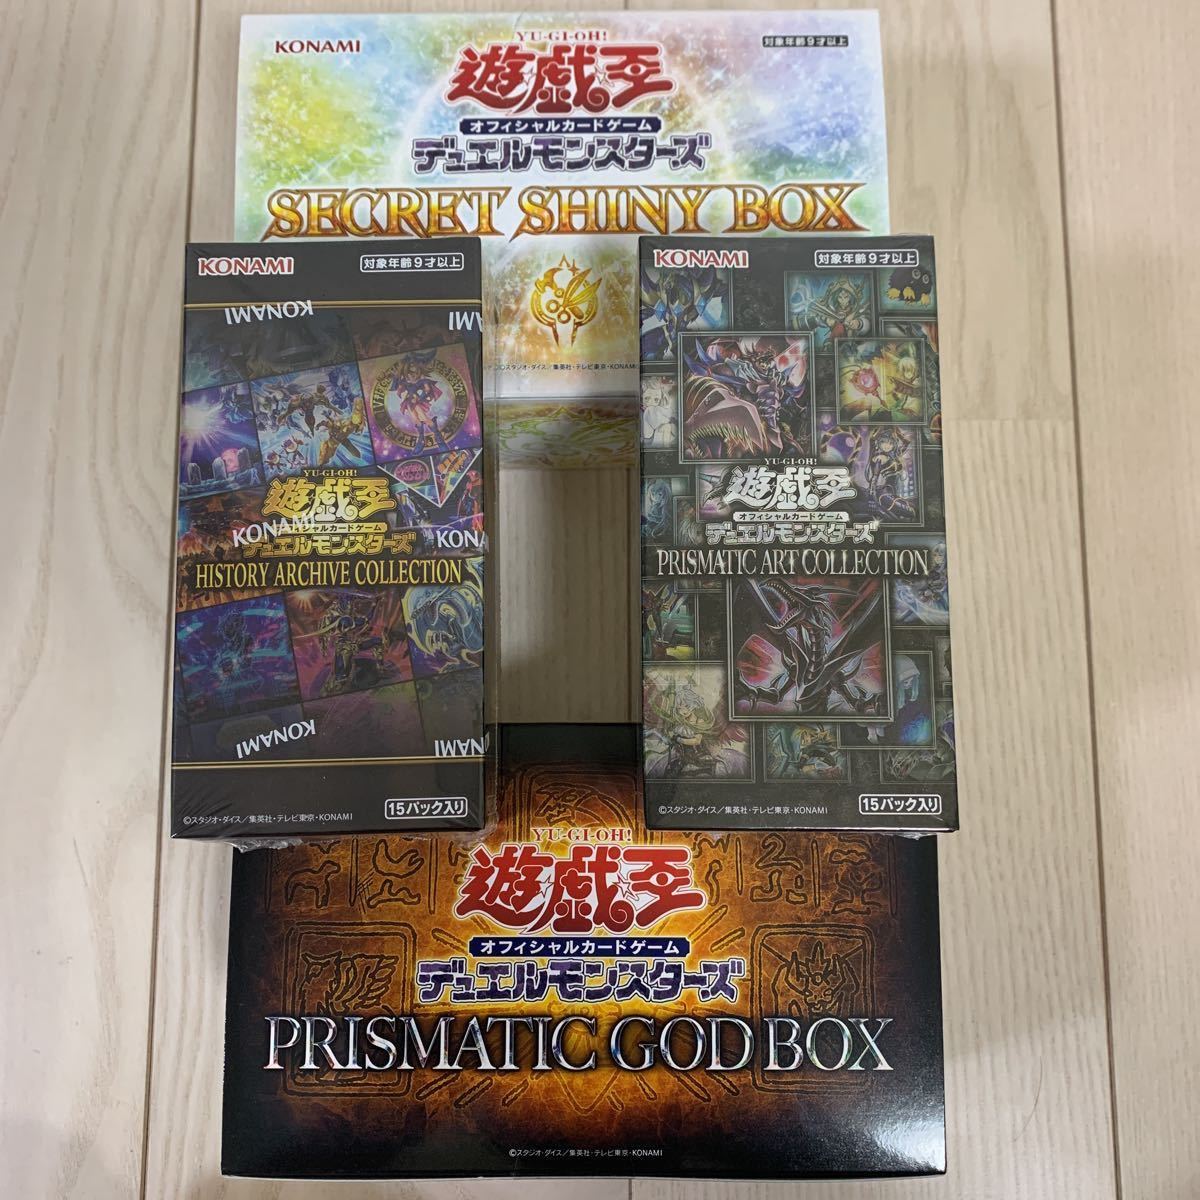 遊戯王 デュエルモンスターズ prismatic god box secret shiny box